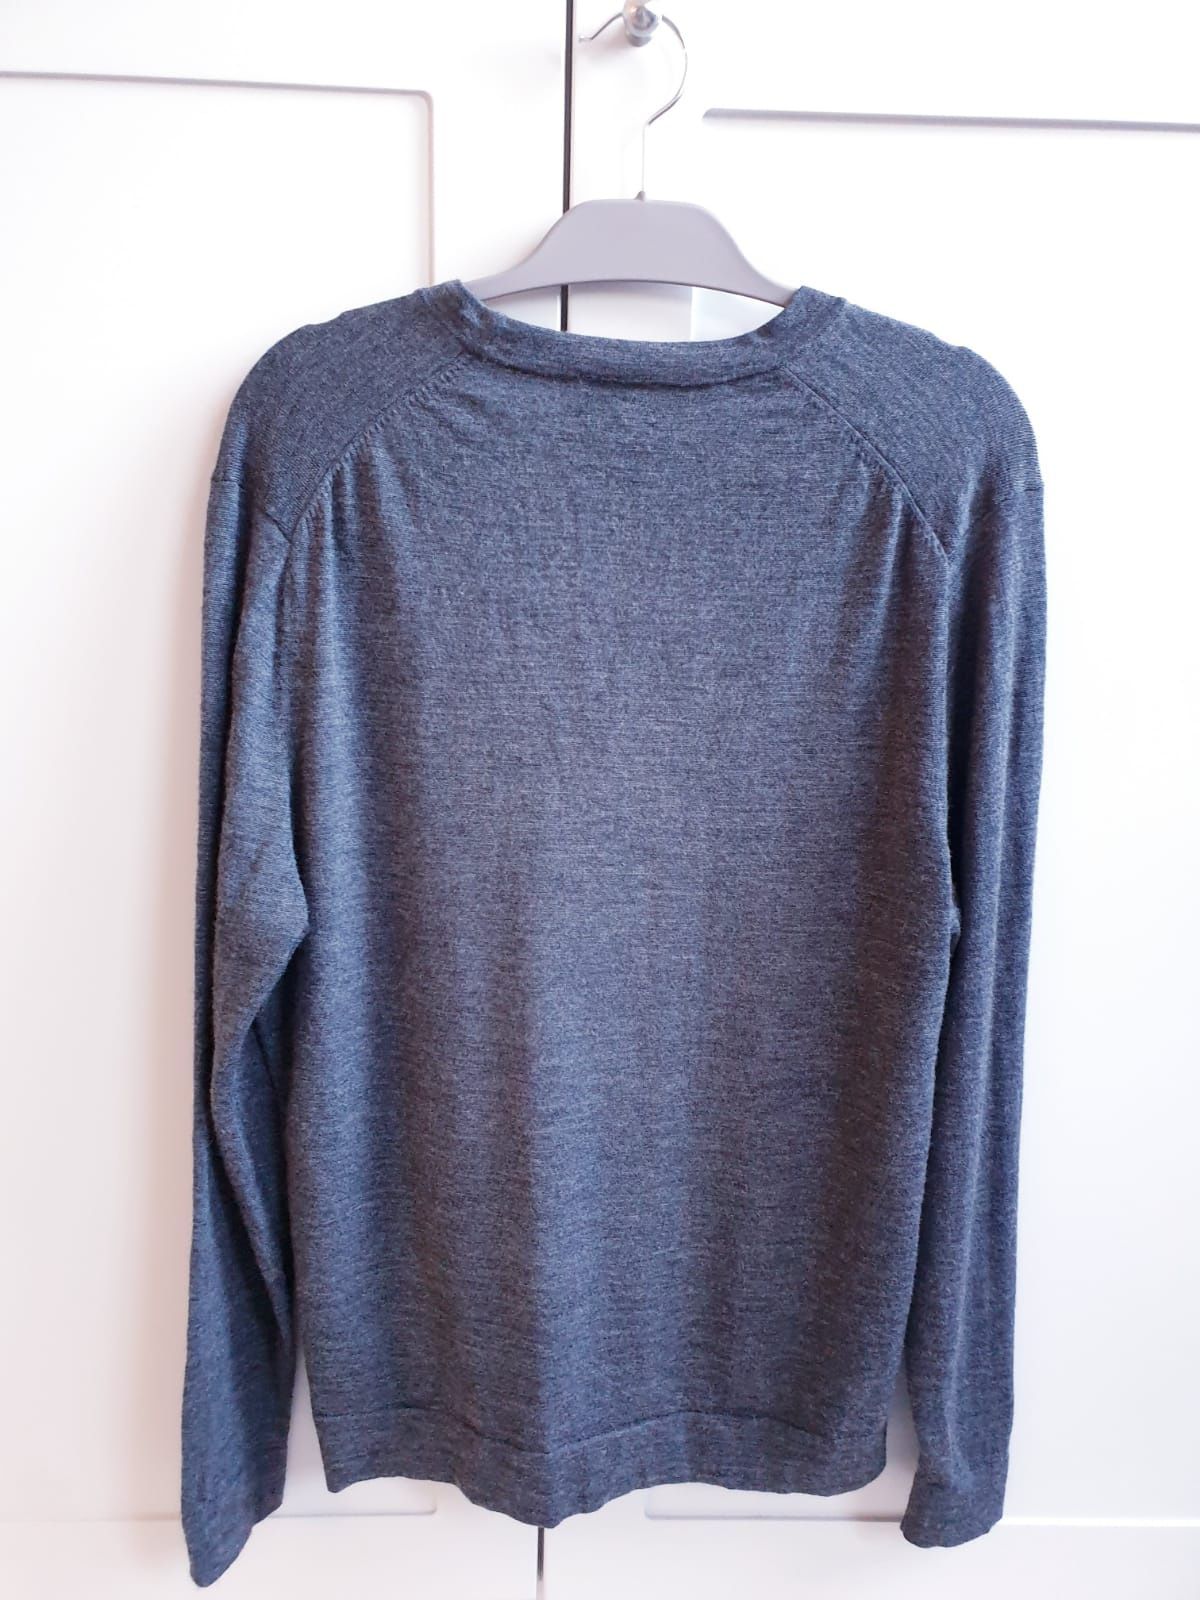 Szary sweter wełniany zapinany męski L H&M wełna merino